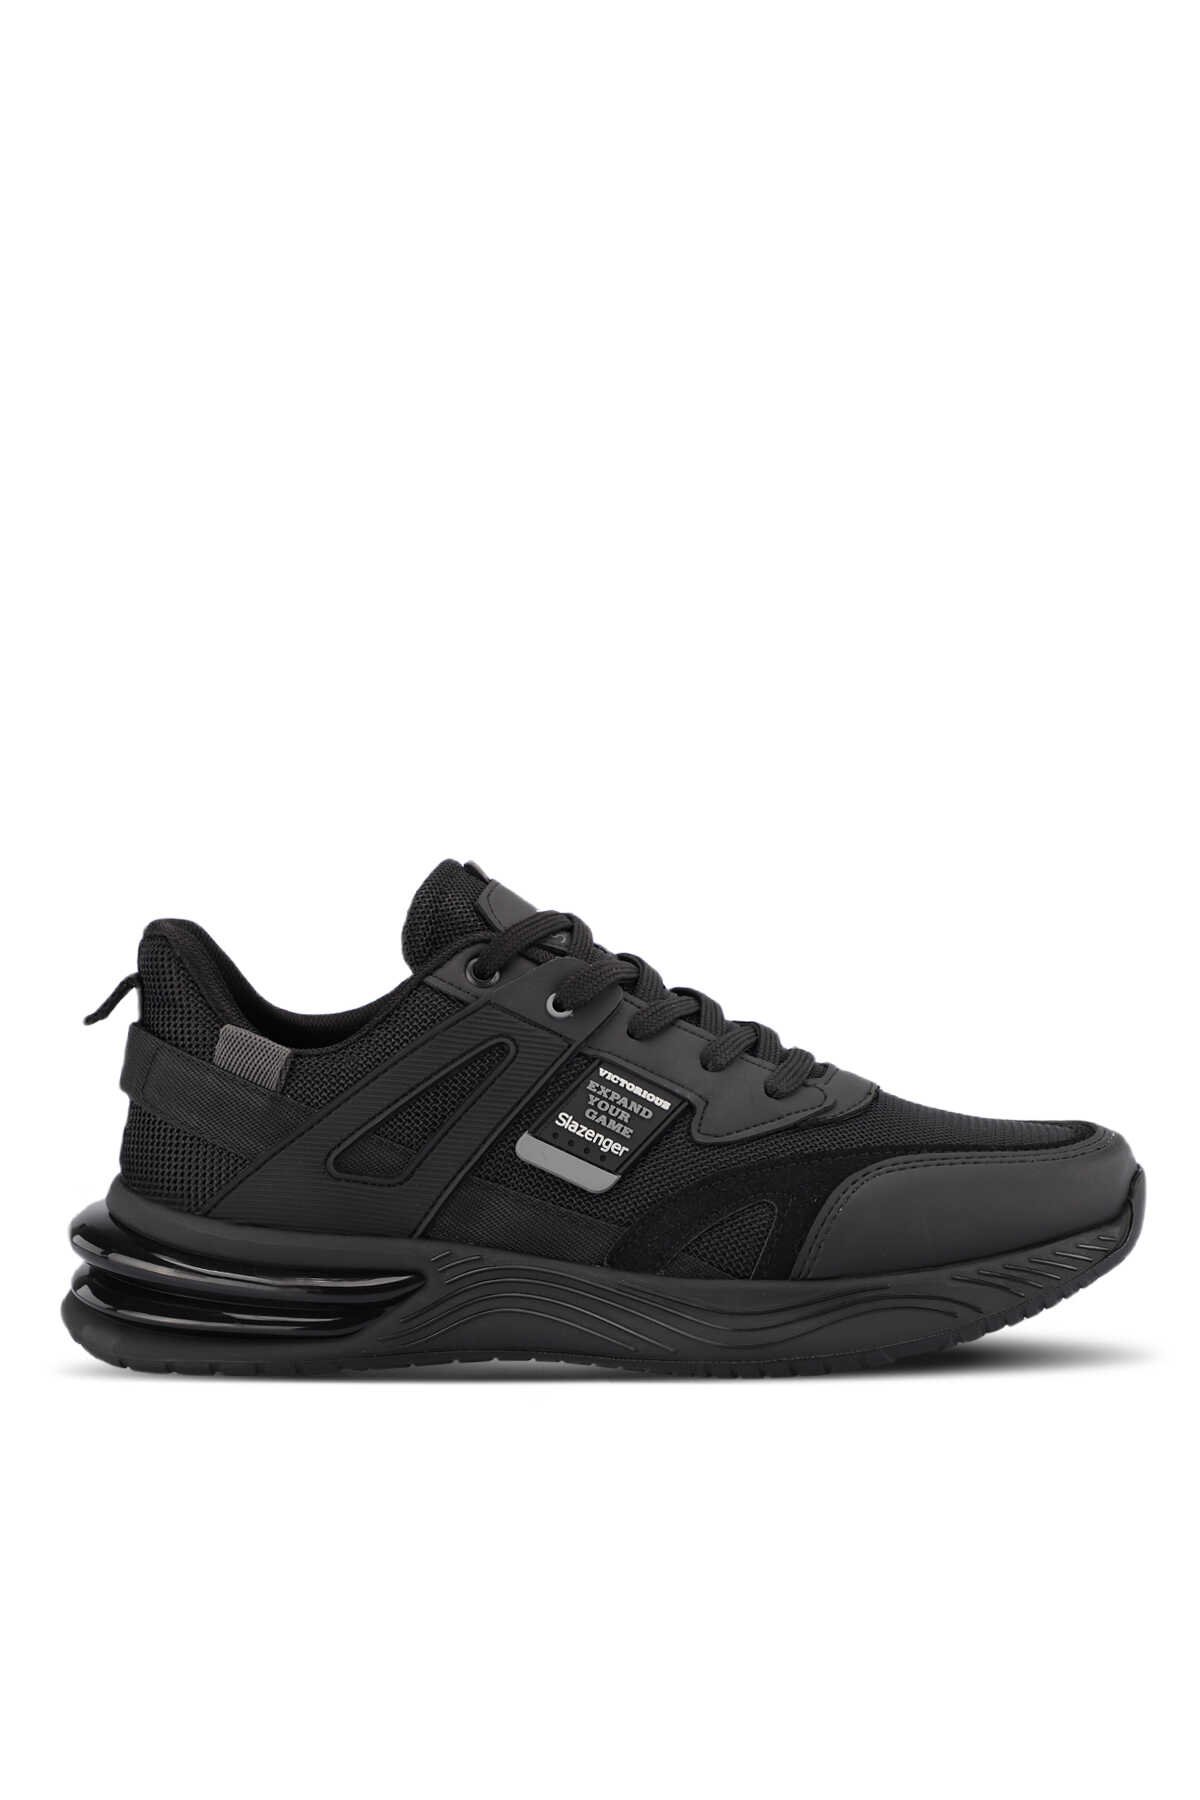 Slazenger - Slazenger ZEND Erkek Sneaker Ayakkabı Siyah / Siyah